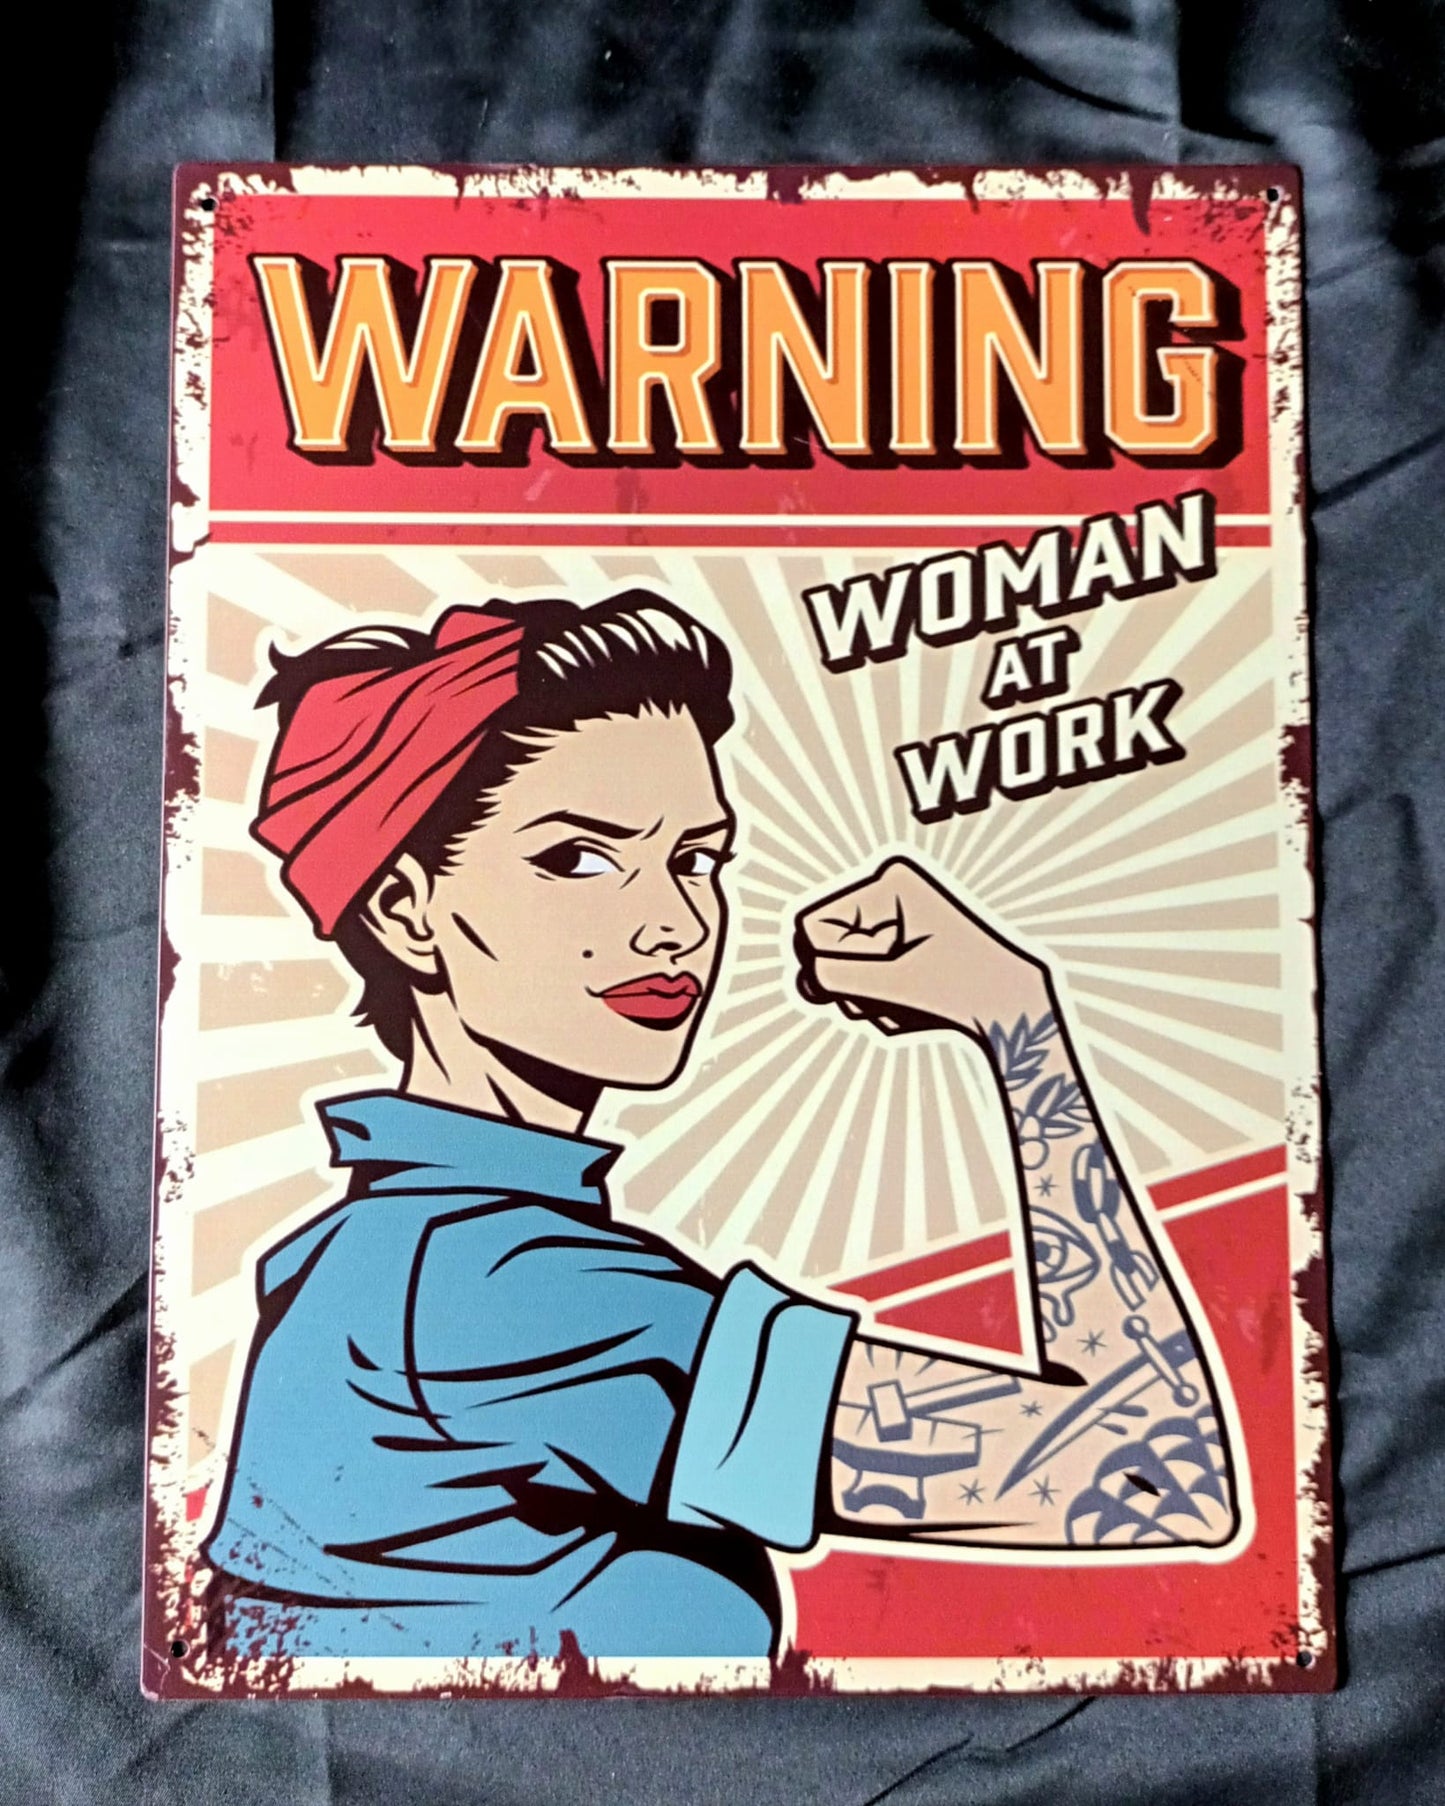 Blechschild "WARNING Woman at Work"